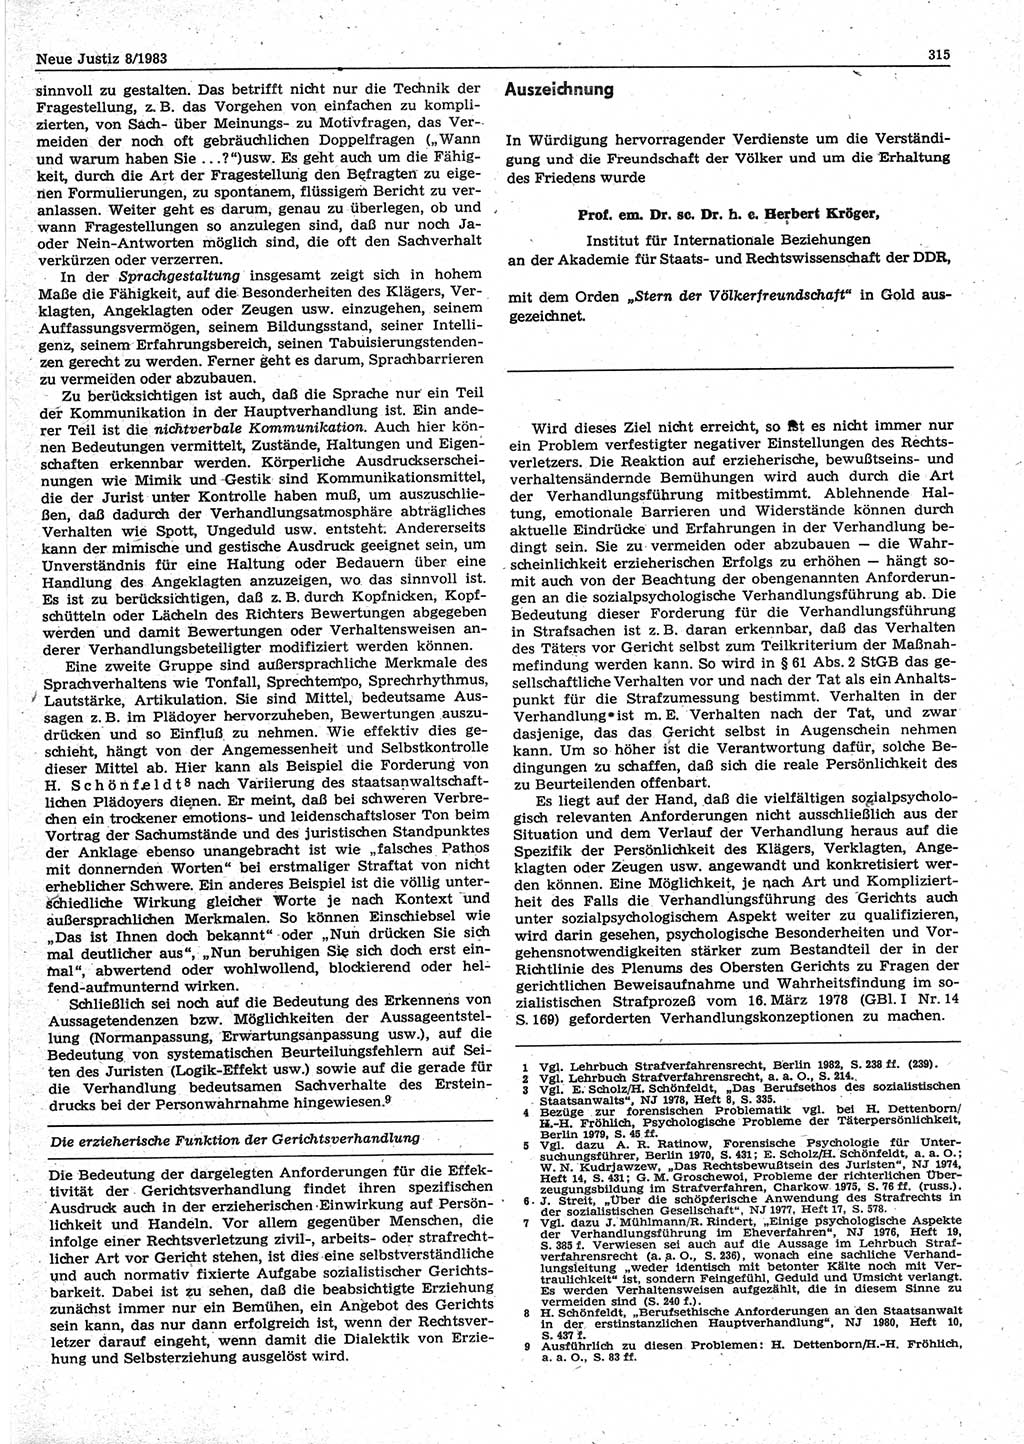 Neue Justiz (NJ), Zeitschrift für sozialistisches Recht und Gesetzlichkeit [Deutsche Demokratische Republik (DDR)], 37. Jahrgang 1983, Seite 315 (NJ DDR 1983, S. 315)